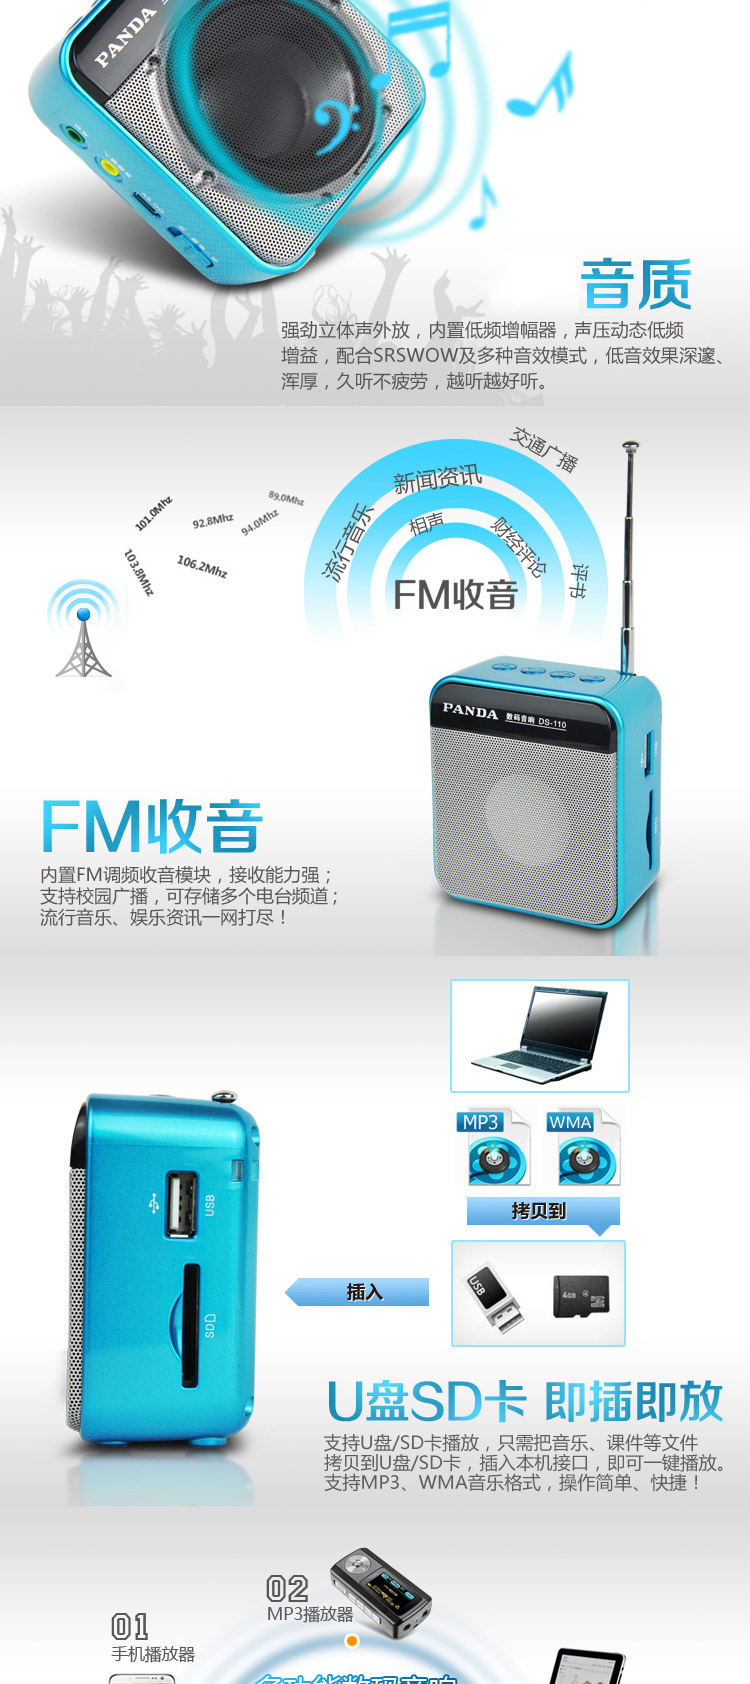 熊猫数码音响播放器DS-110 红 插卡音箱 立体声收音机